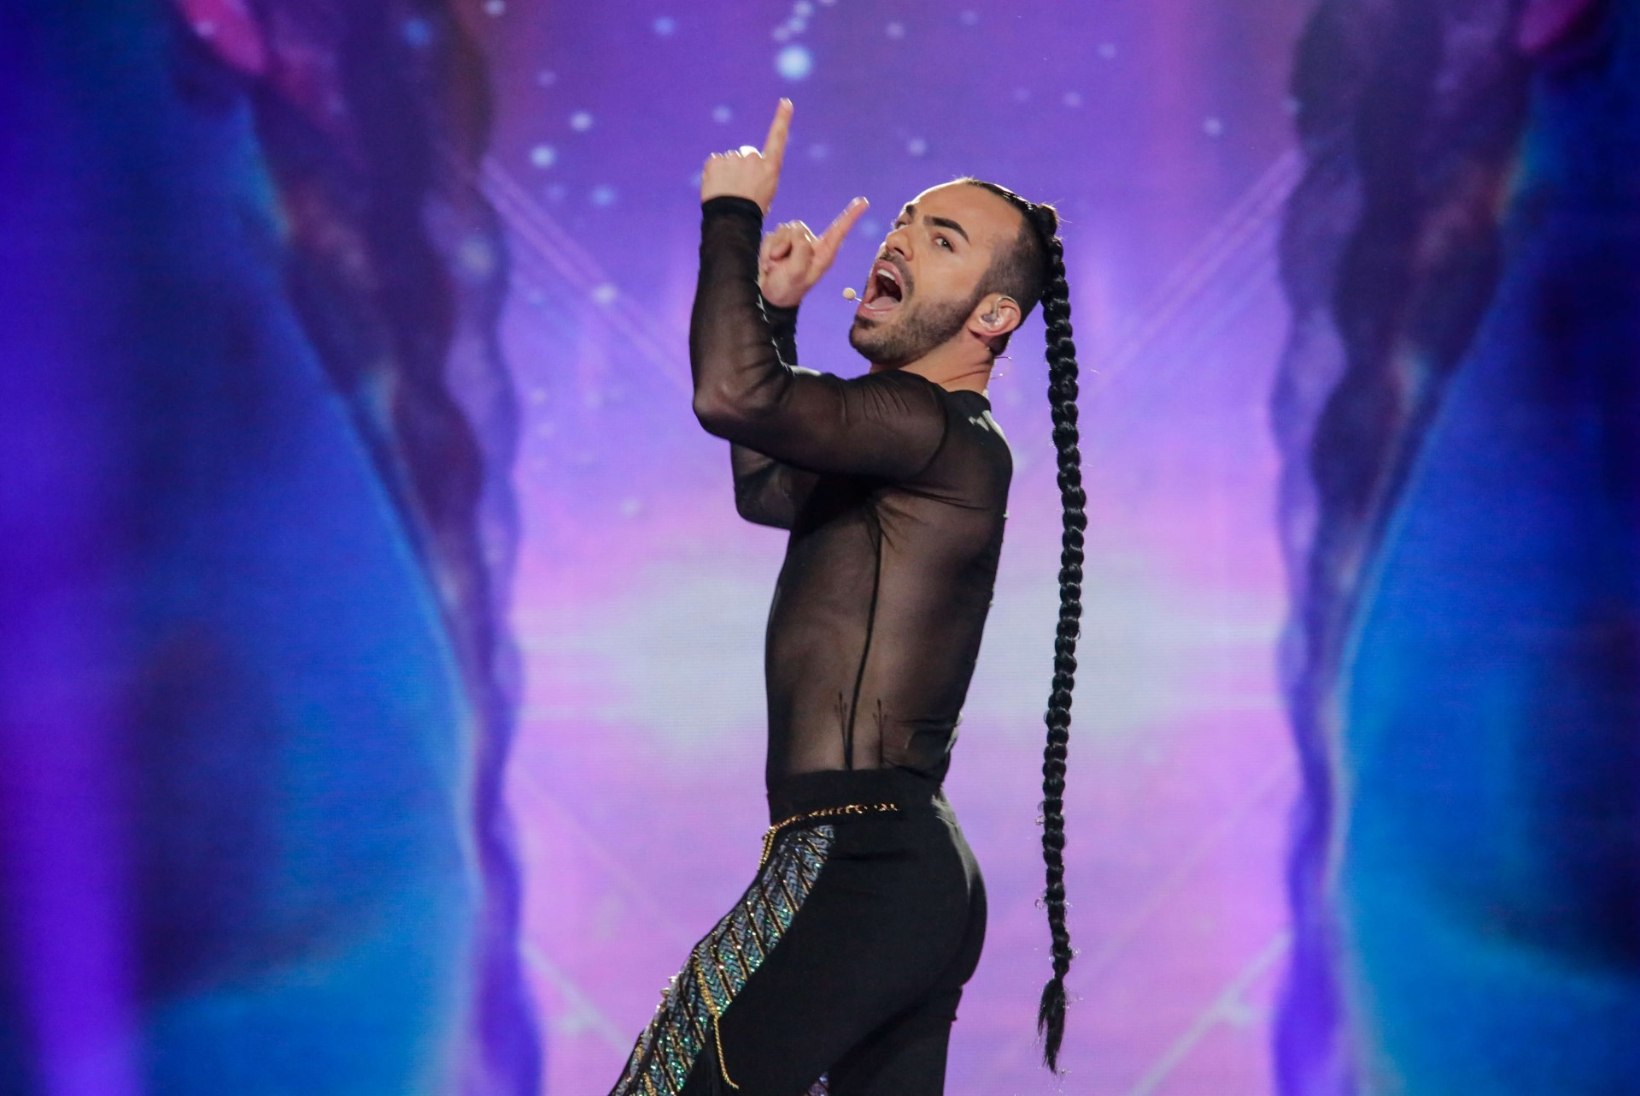 FOTOD | Eurovisioni esimene poolfinaal: kellel on kõige julgem lõhik, kes on noorim osaleja?